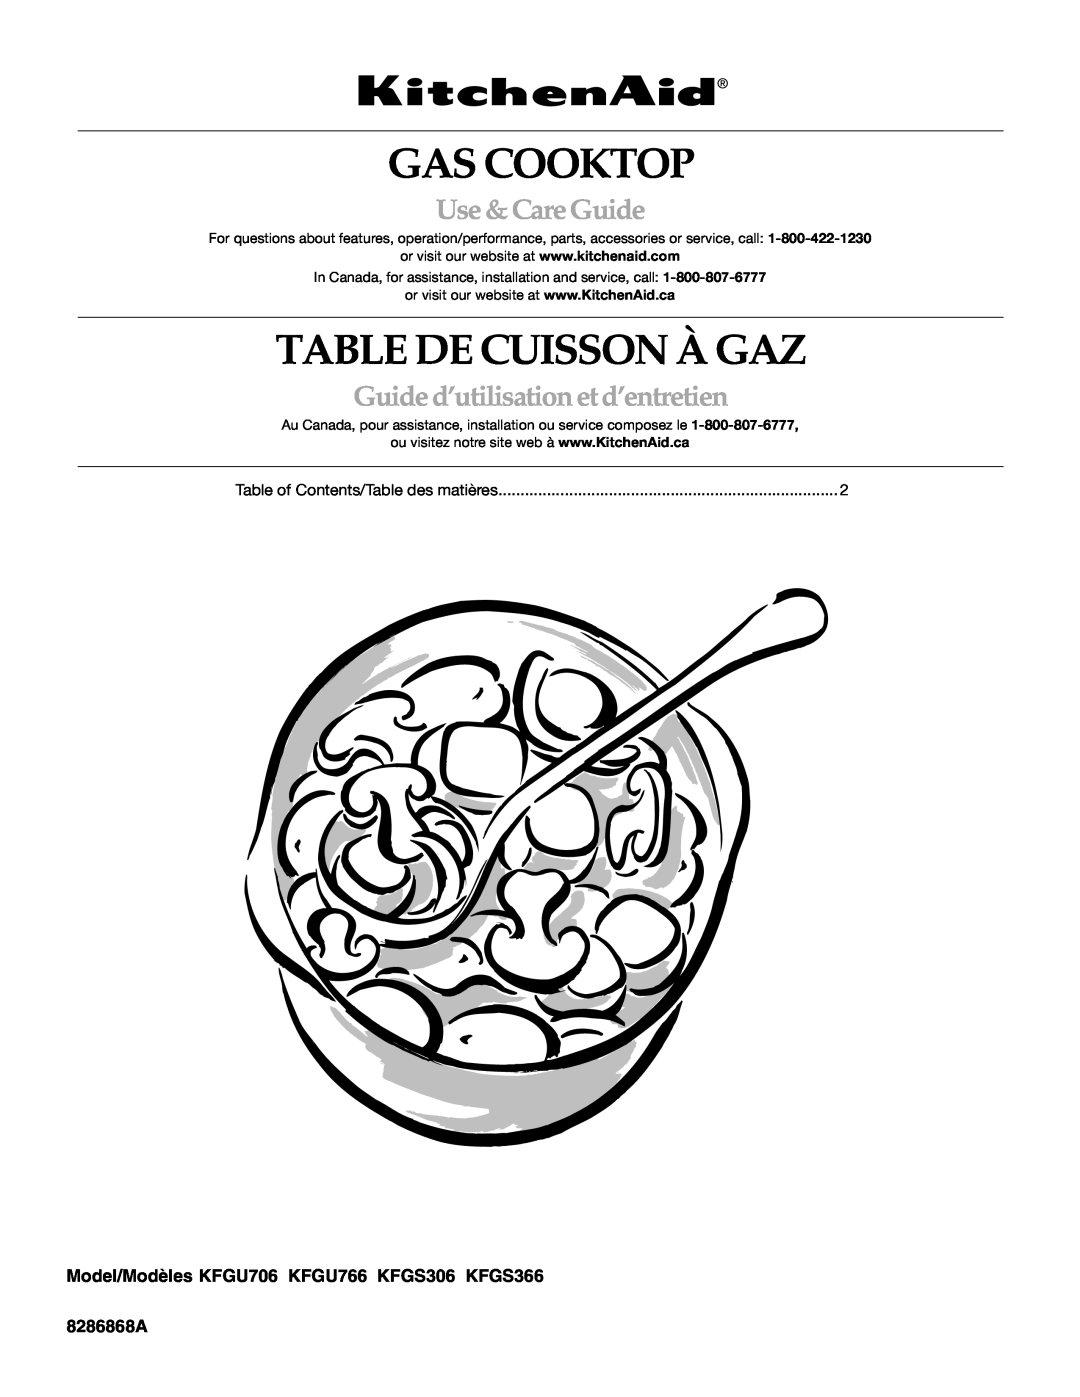 KitchenAid KFGU766 manual Gas Cooktop, Table De Cuisson À Gaz, Use &CareGuide, Guided’utilisationetd’entretien, 8286868A 